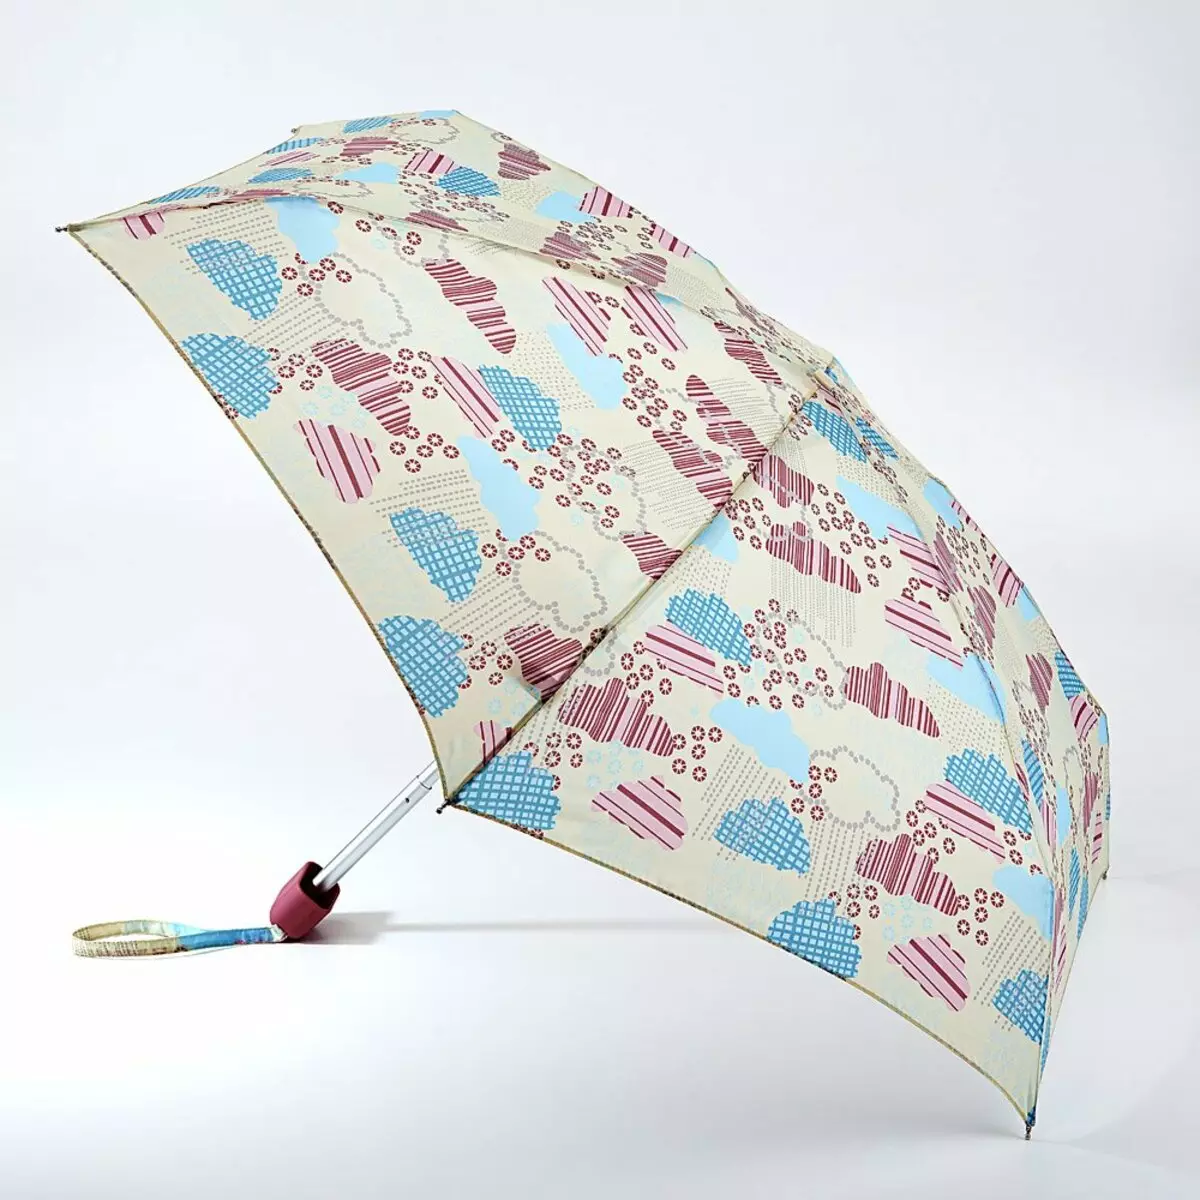 Fulton Umbrellas (53 fotos): skaaimerken fan modellen en resinsjes oer Umbrellas 15229_51